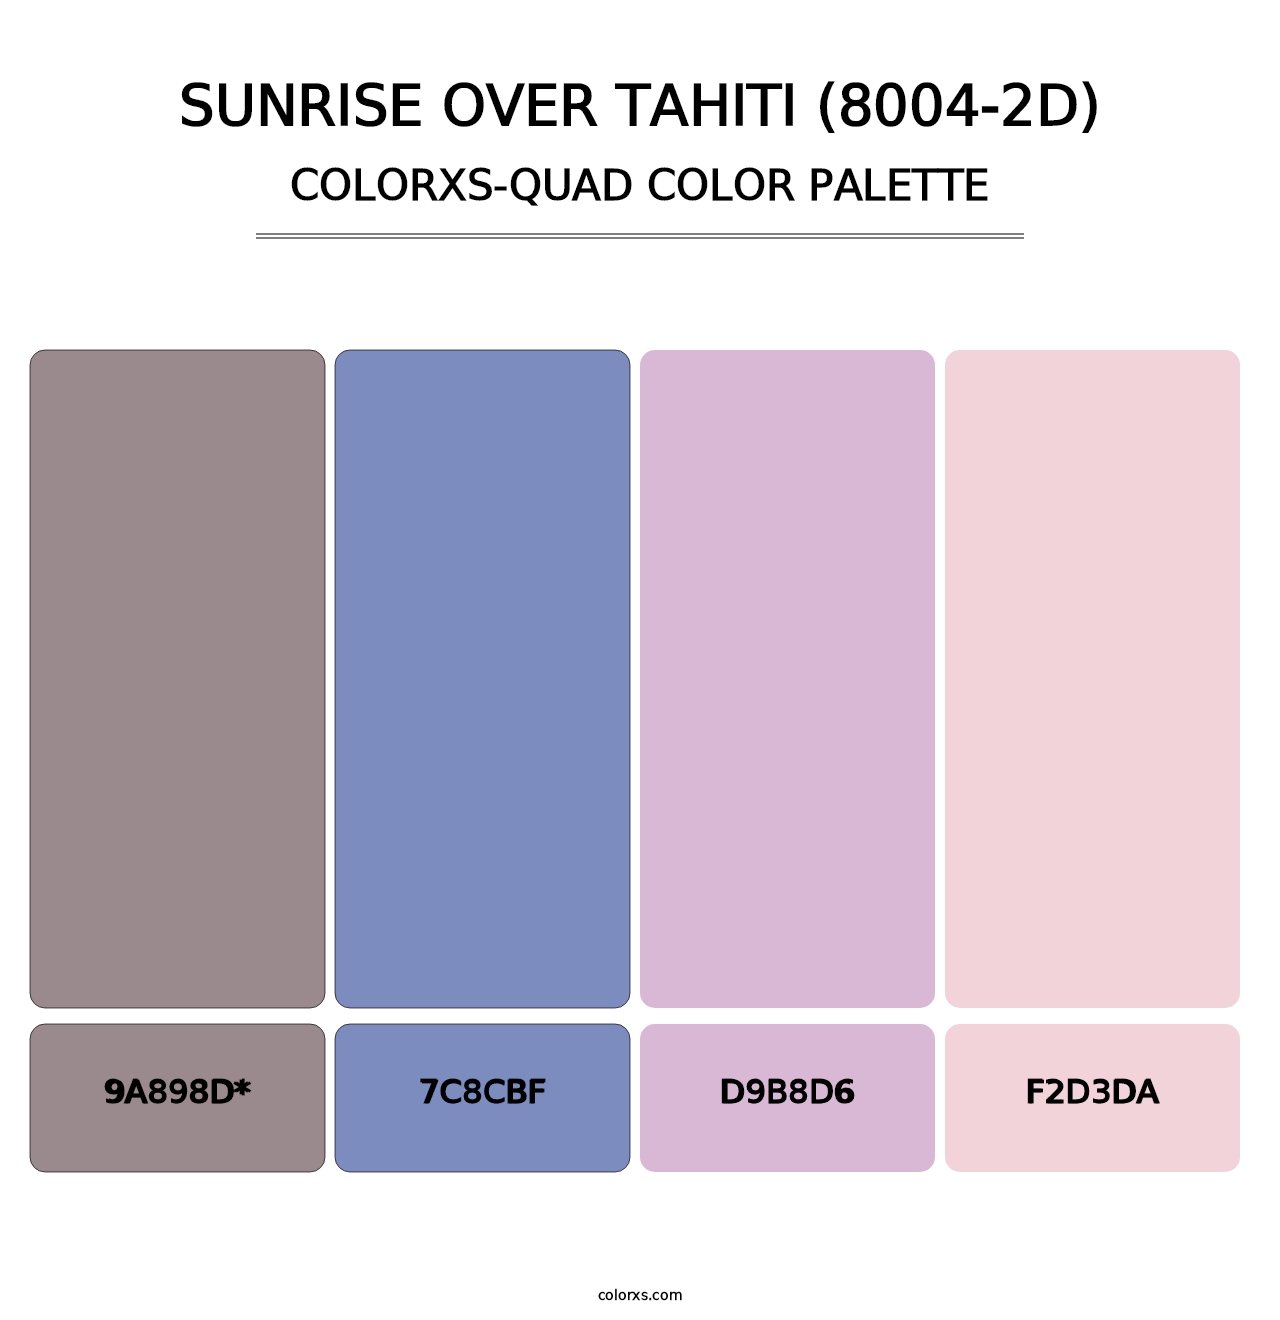 Sunrise Over Tahiti (8004-2D) - Colorxs Quad Palette